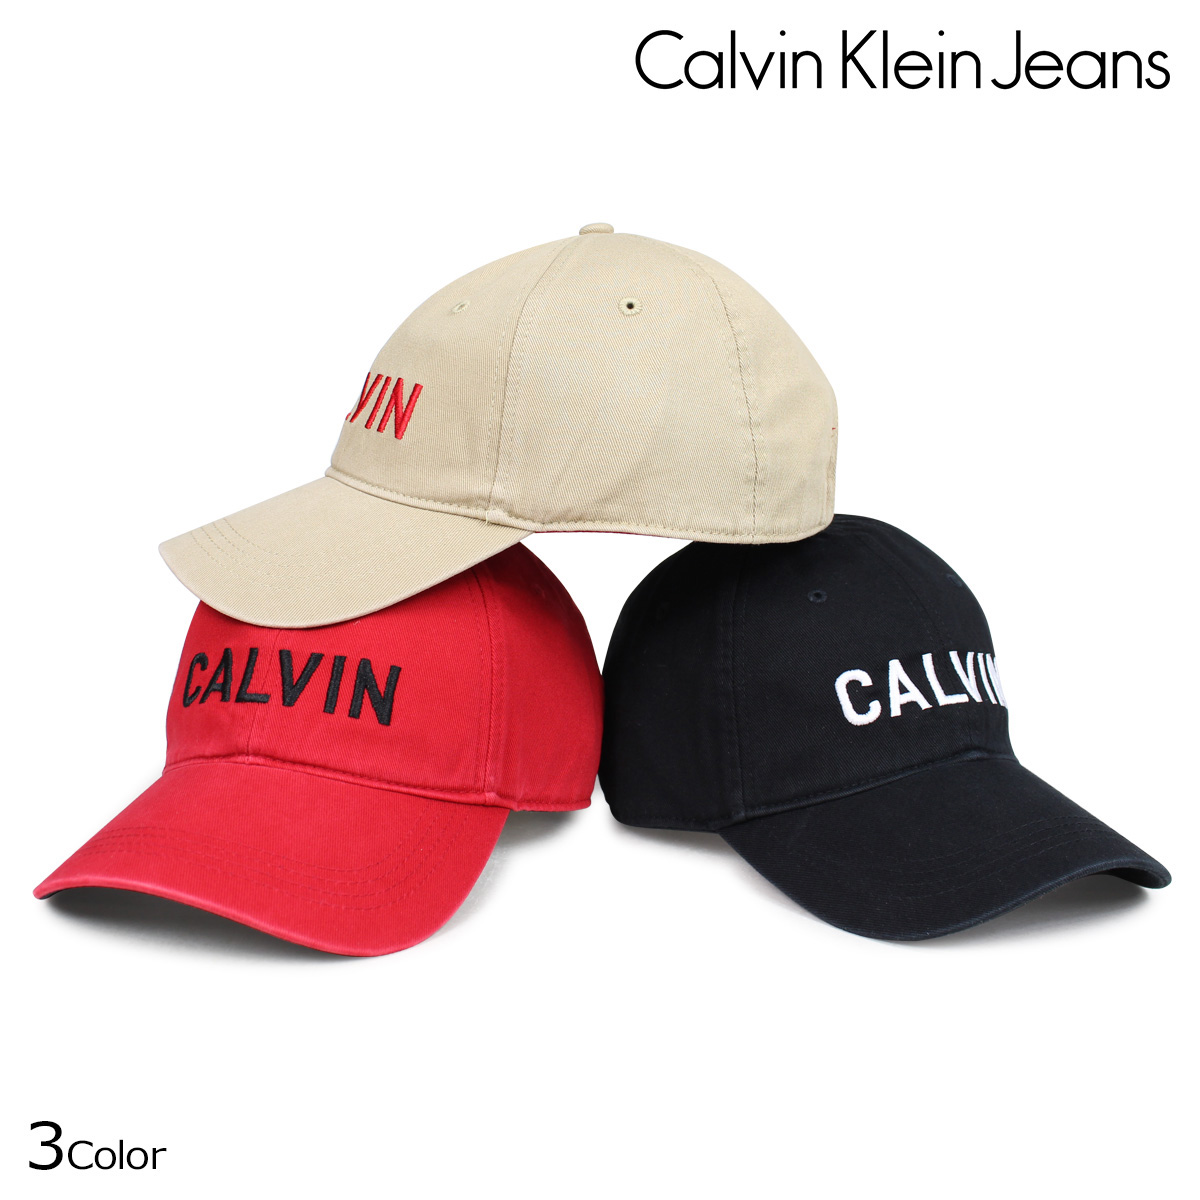 calvin klein jeans online